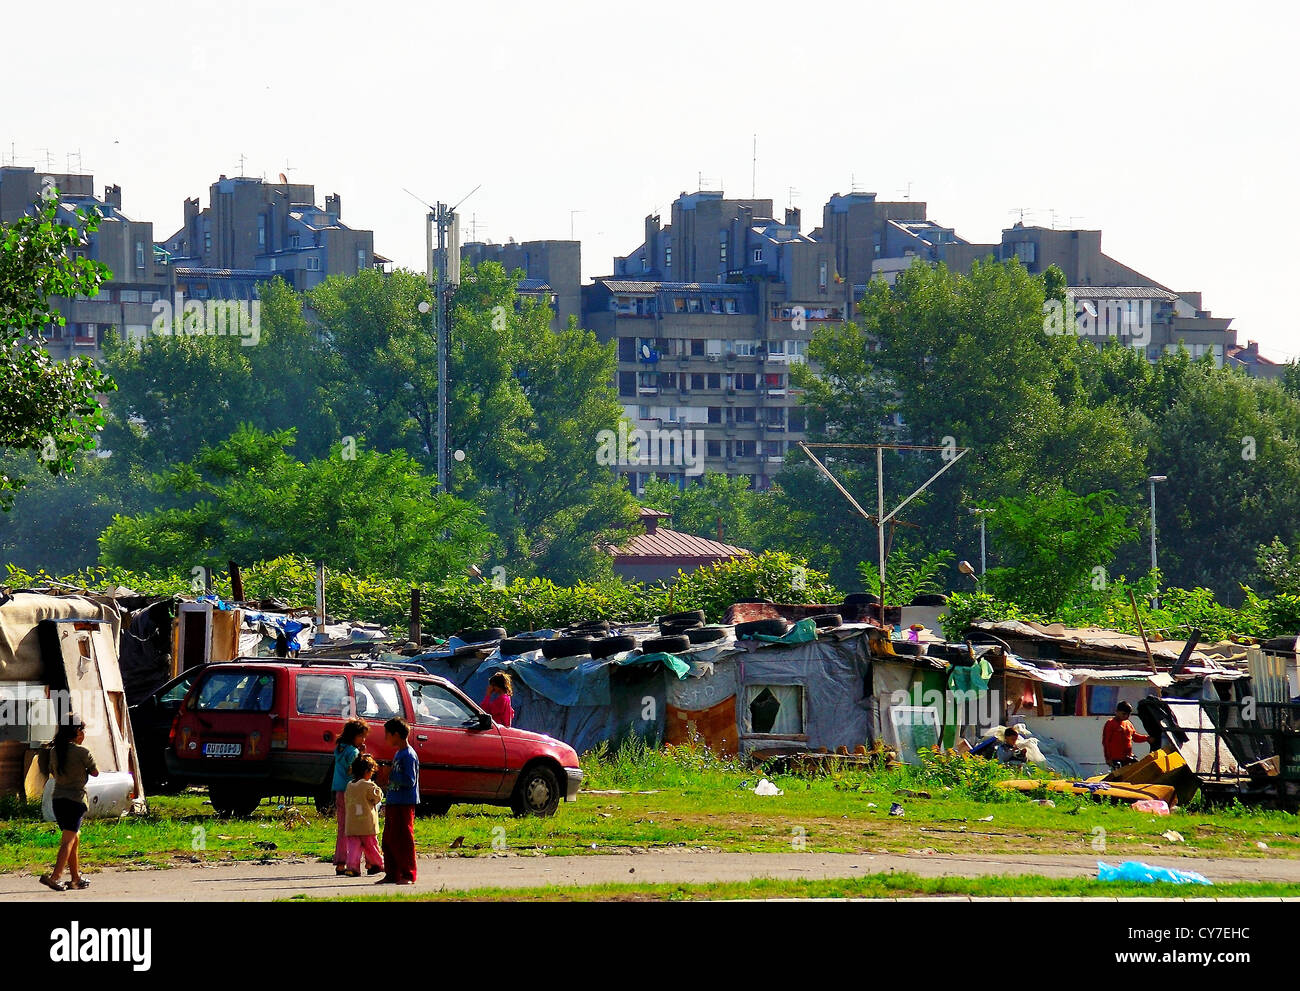 Belgrad, Serbien: ein Rom Camp am Rande der Stadt. Stockfoto